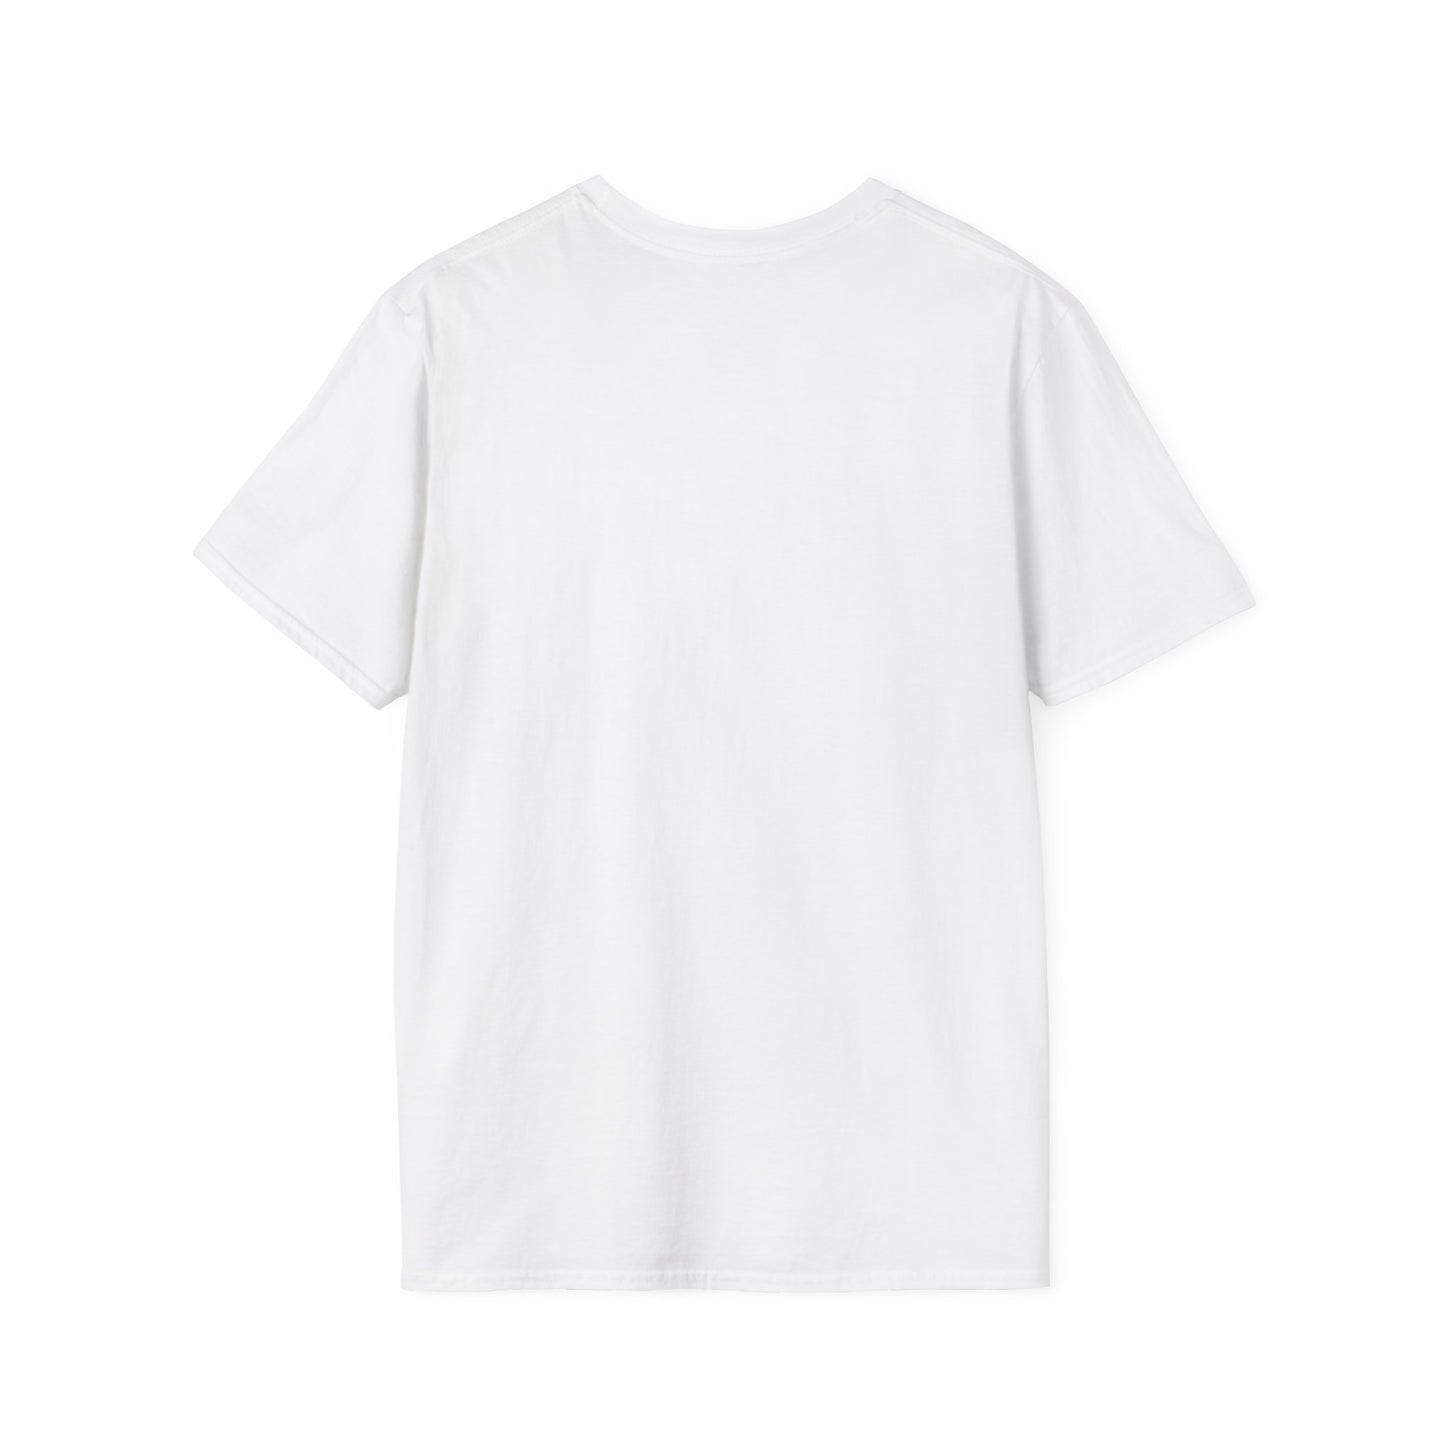 Unisex Softstyle T-Shirt - B2